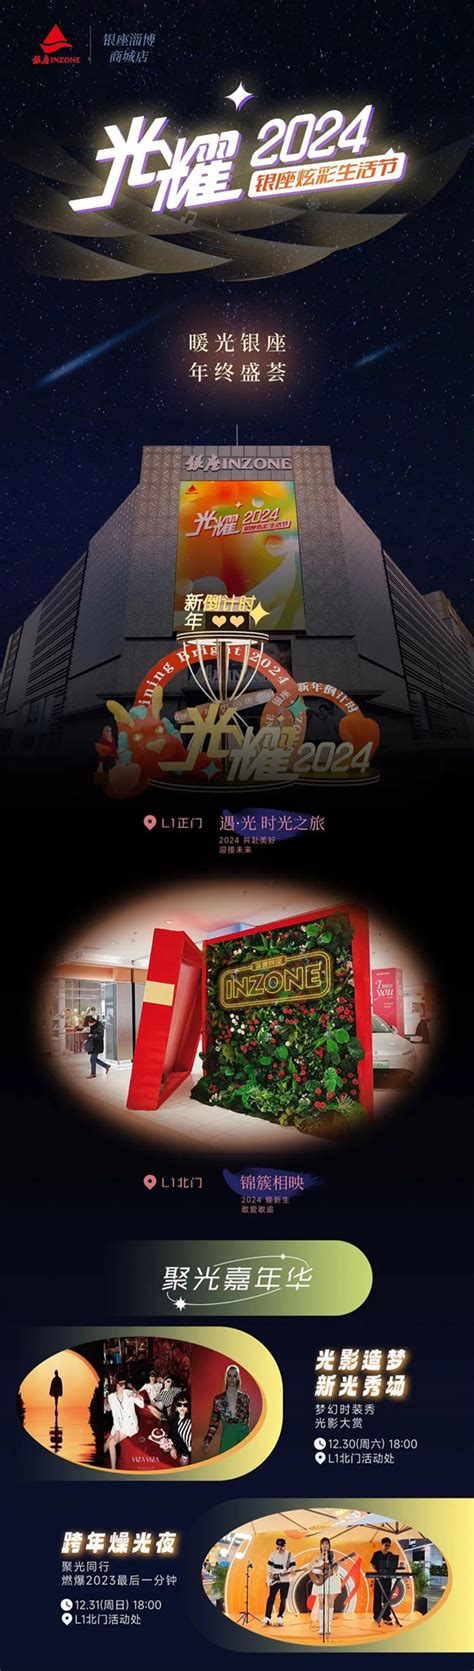 年终盛会 | 淄博银座商城炫彩生活节即将开幕_焦点新闻_大众网